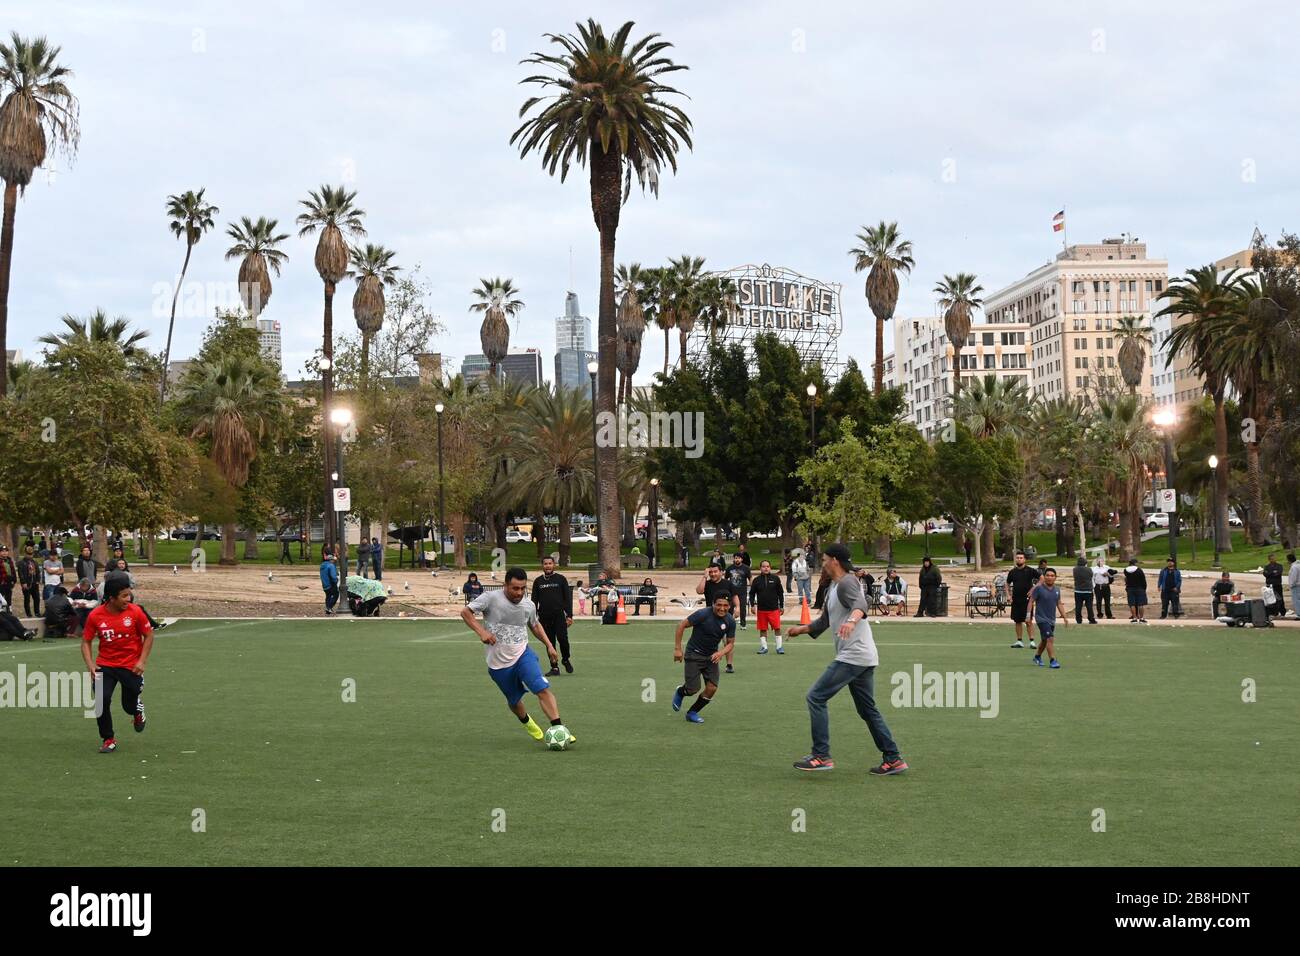 La gente gioca a calcio al MacArthur Park sulla scia dell'epidemia di coronavirus COVID-19, sabato 21 marzo 2020, a Los Angeles. (Foto di IOS/Espa-Images) Foto Stock